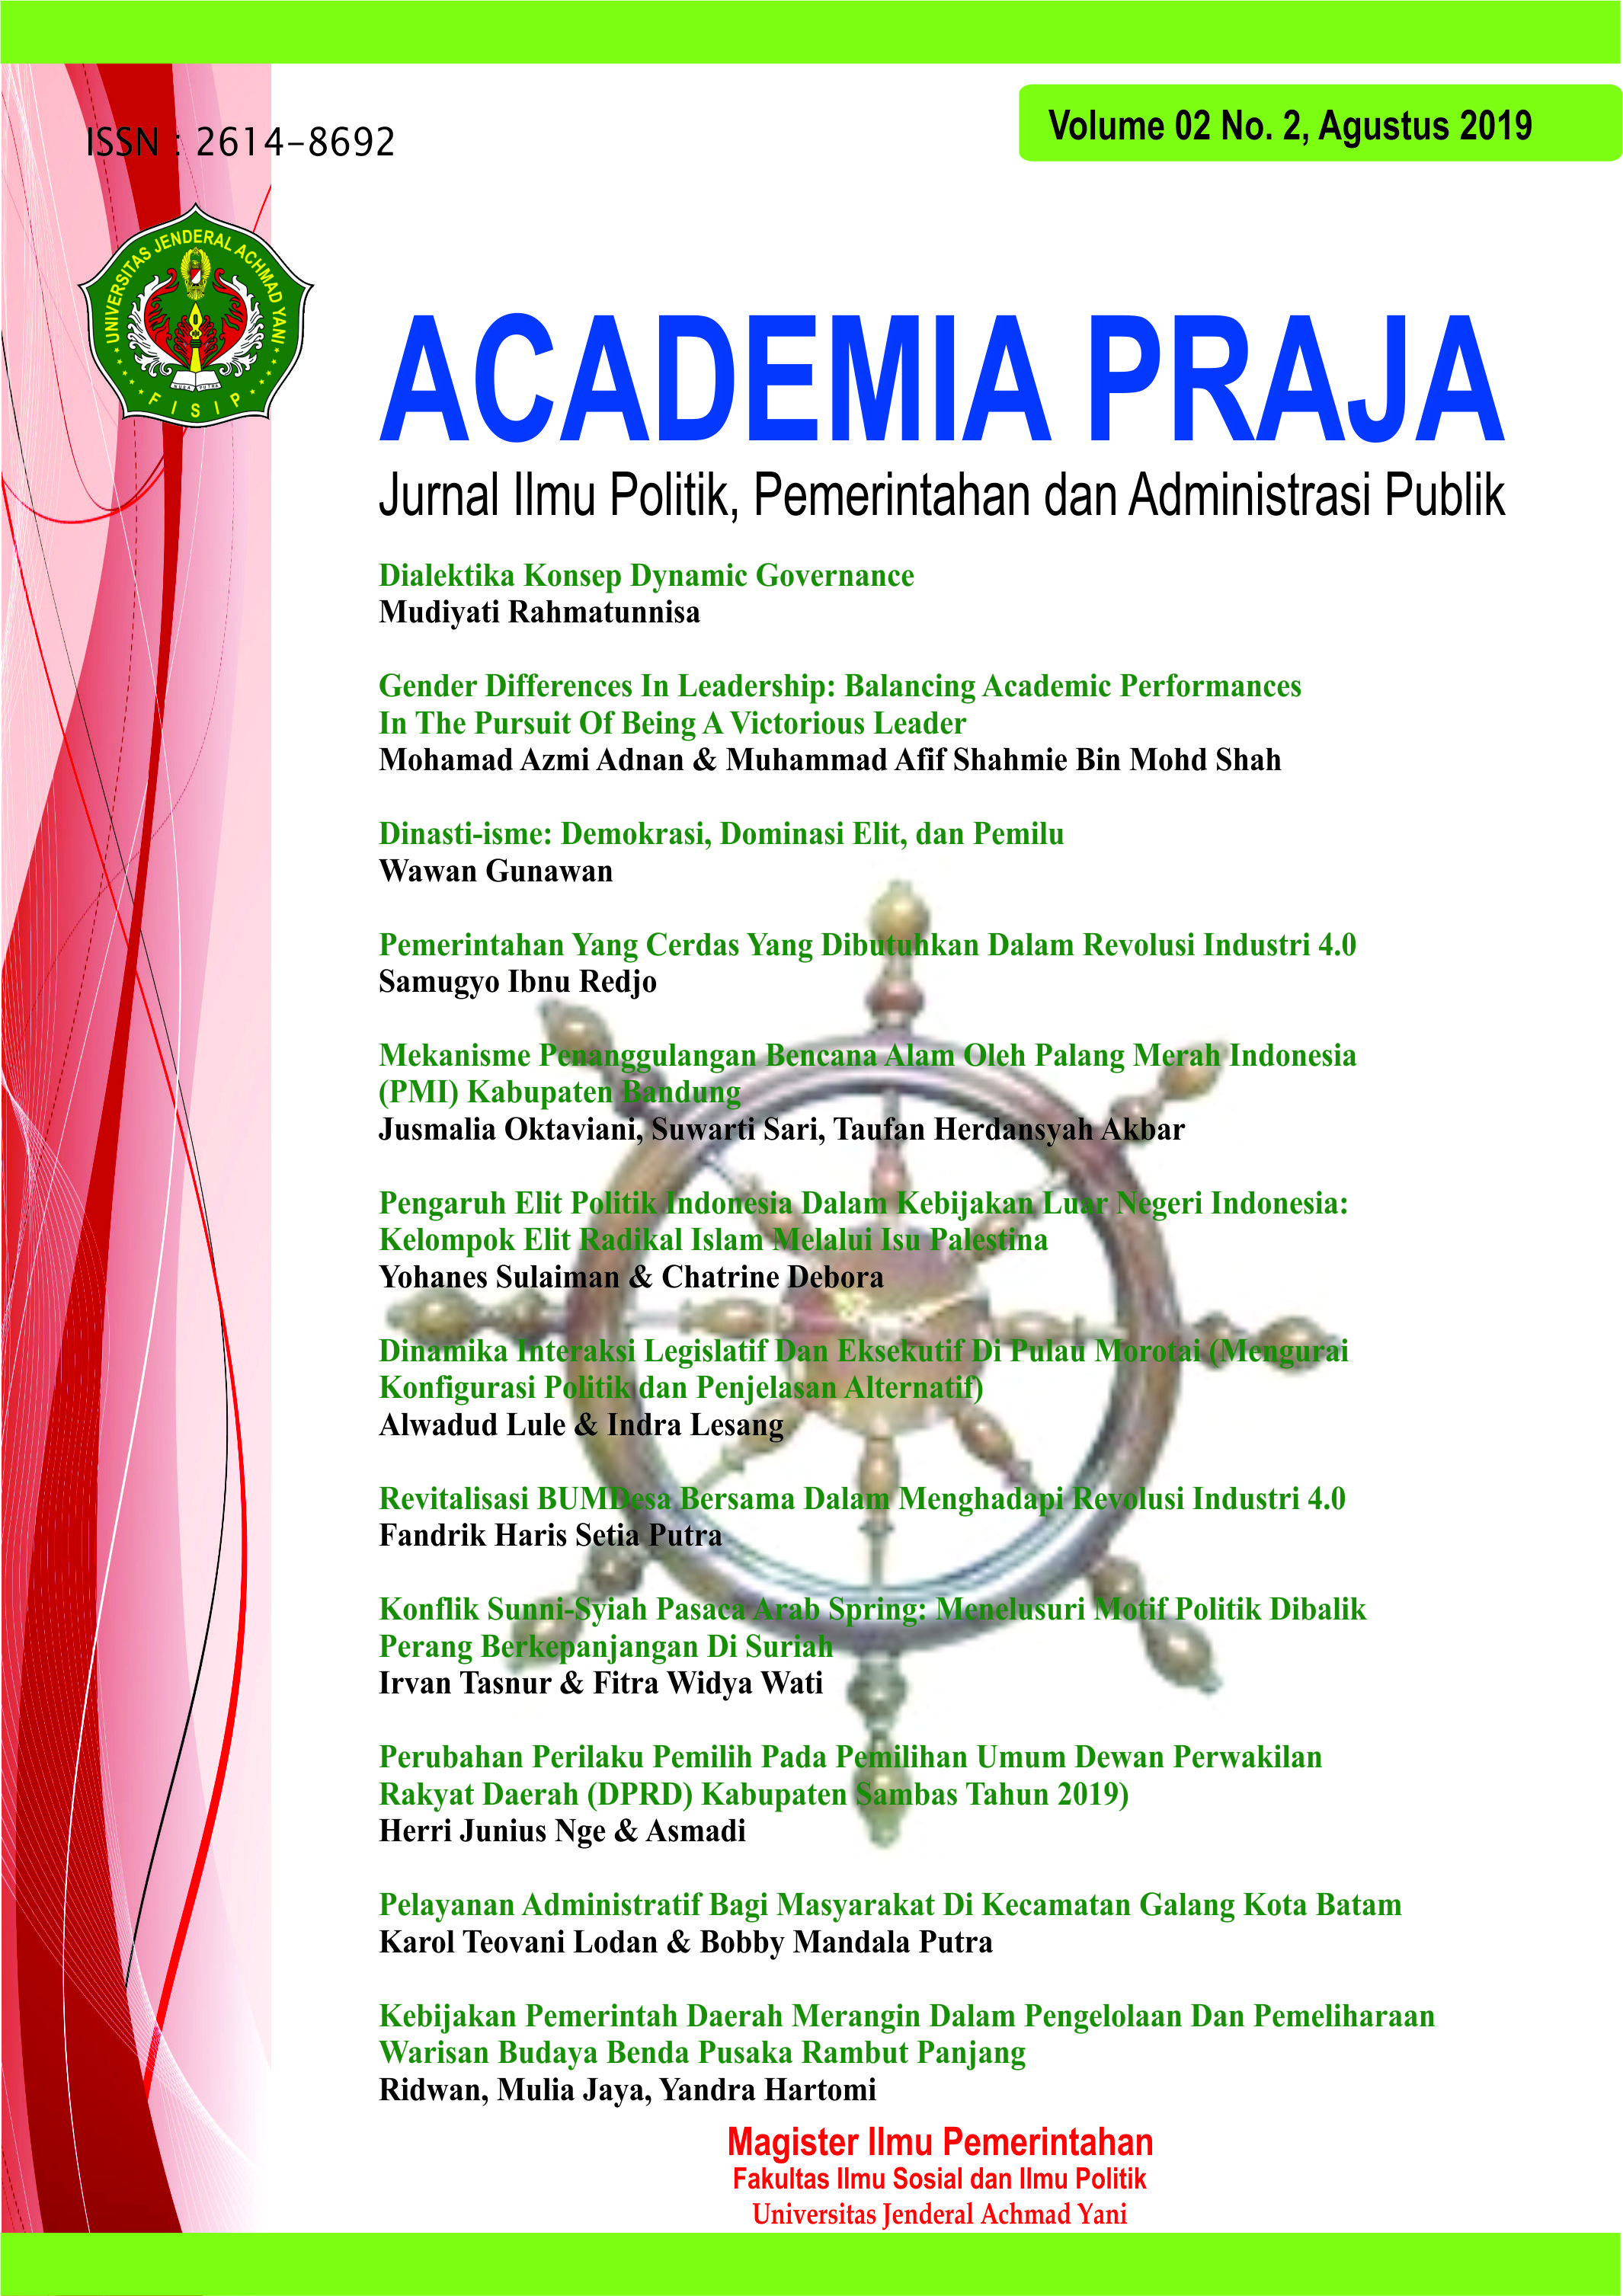 Academia Praja Vol. 2 No.02